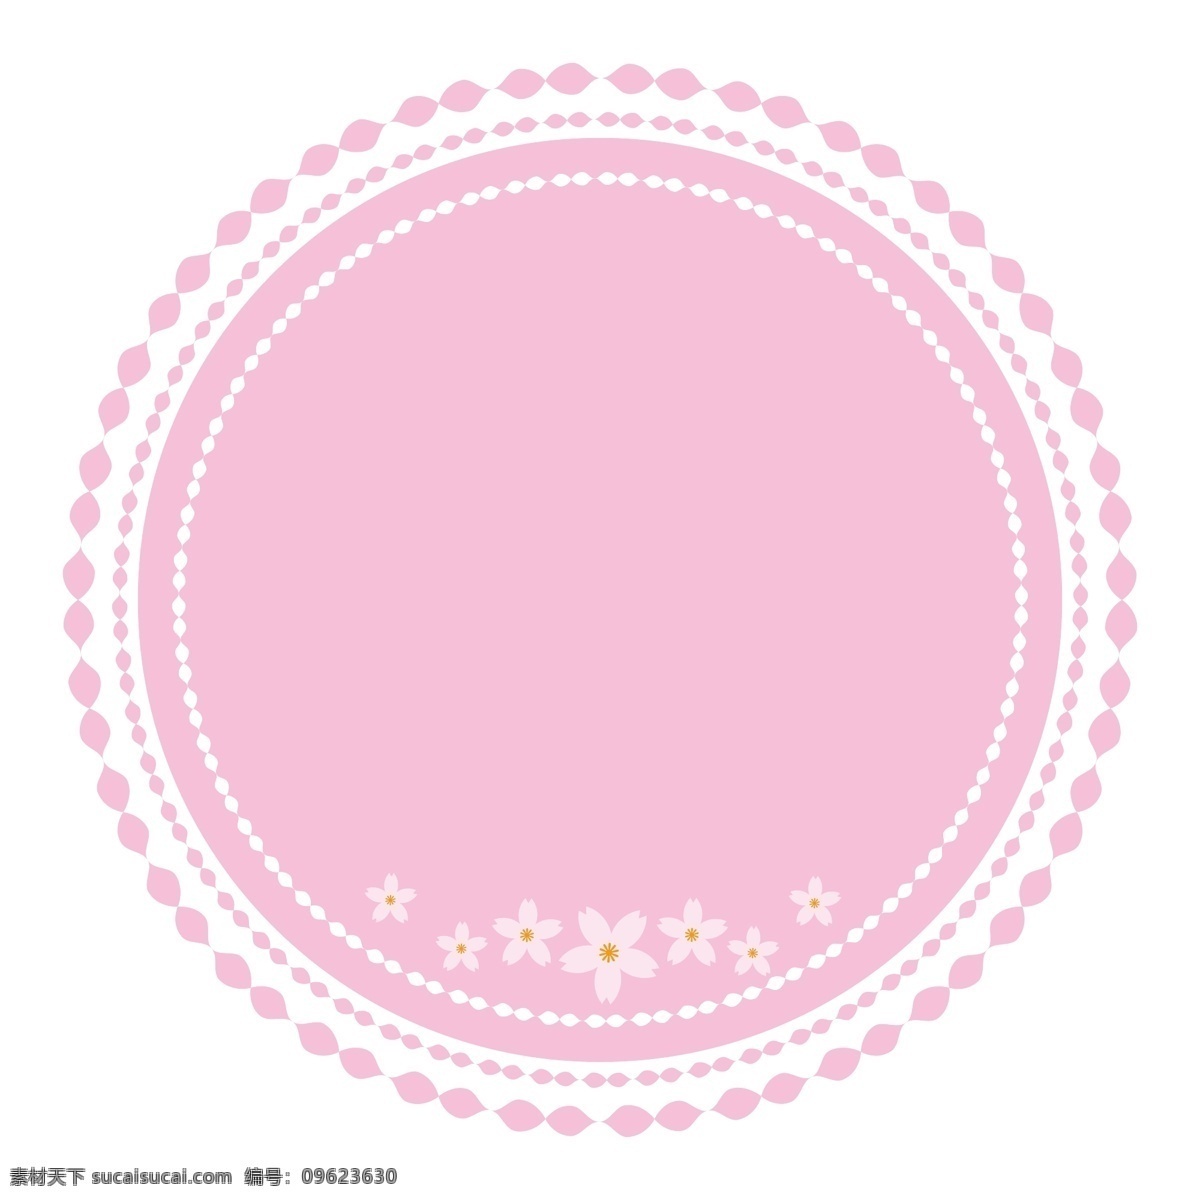 粉白色 樱花 可爱 元 形 边框 矢量 粉色 日式樱花 日系印花 粉色少女 环绕圆框 圆形边框 可爱花朵 少女系